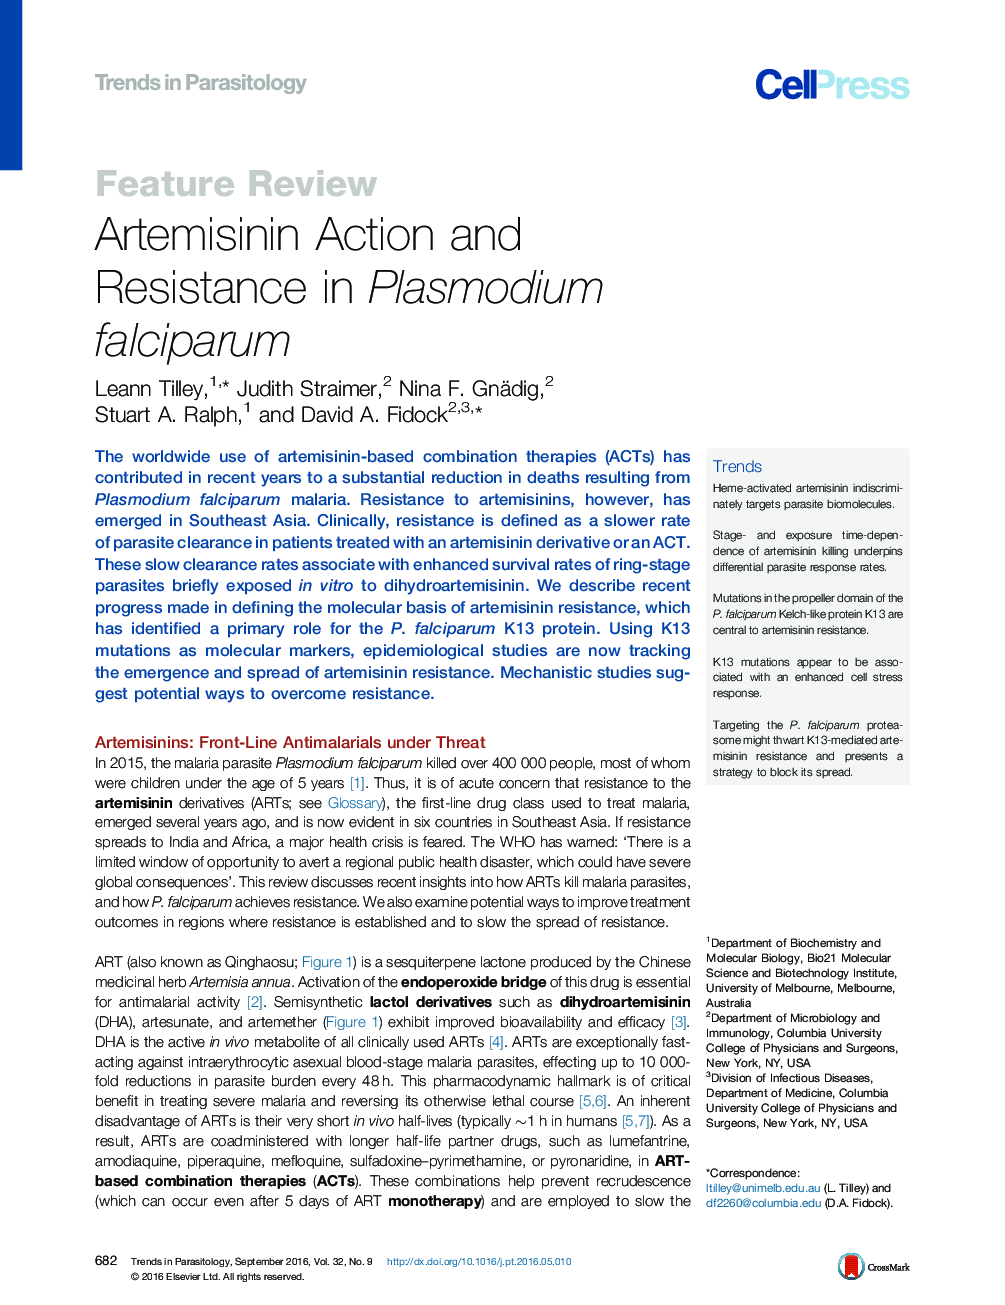 Artemisinin Action and Resistance in Plasmodium falciparum